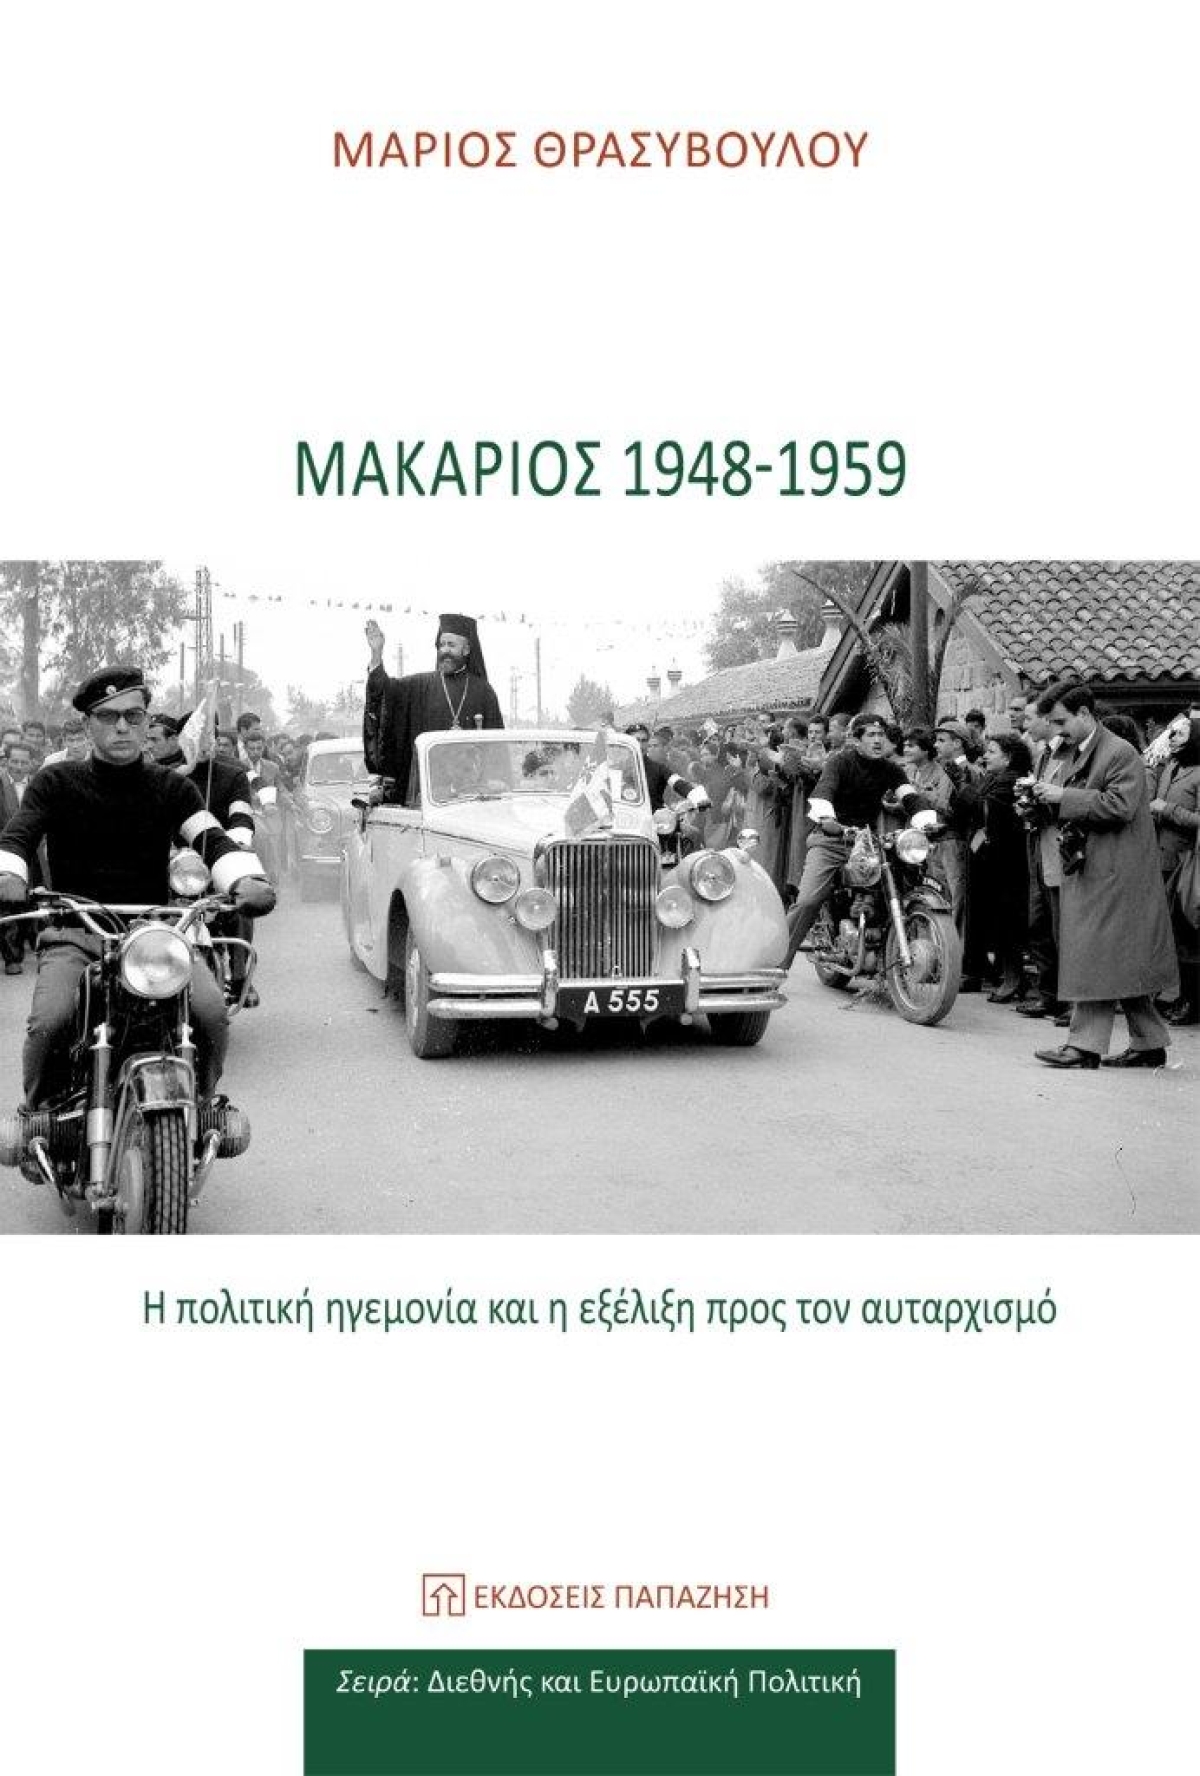 Κυκλοφόρησε από τις εκδόσεις Παπαζήση η νέα μελέτη του Κύπριου ιστορικού Μάριου Θρασυβούλου &quot;Μακάριος 1948-1959: Η πολιτική ηγεμονία και η εξέλιξη προς τον αυταρχισμό&quot;